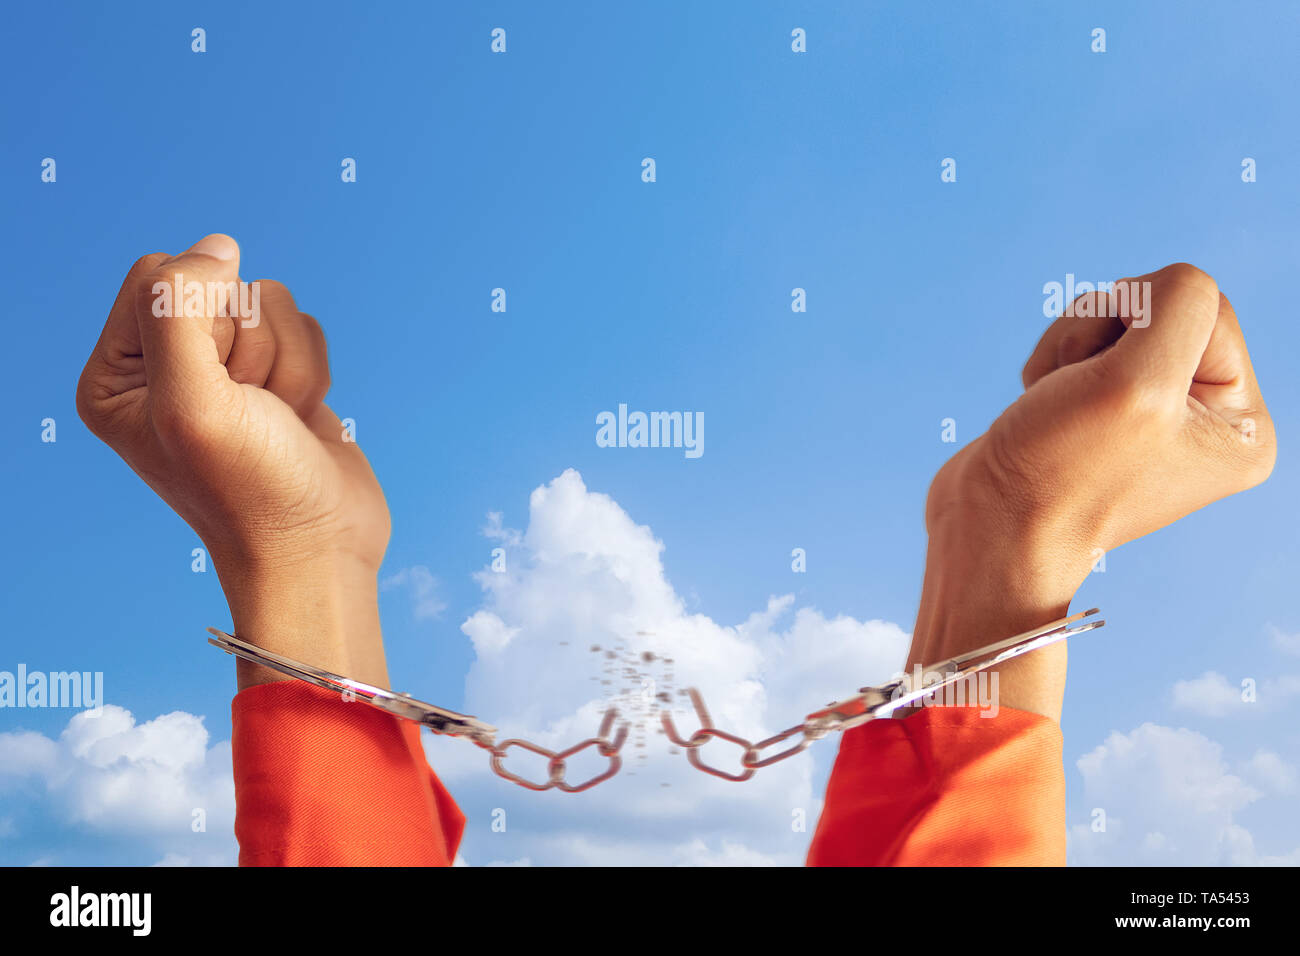 Concepto de libertad. las dos manos del preso con esposas roto por la libertad significado con el cielo azul a fondo Foto de stock